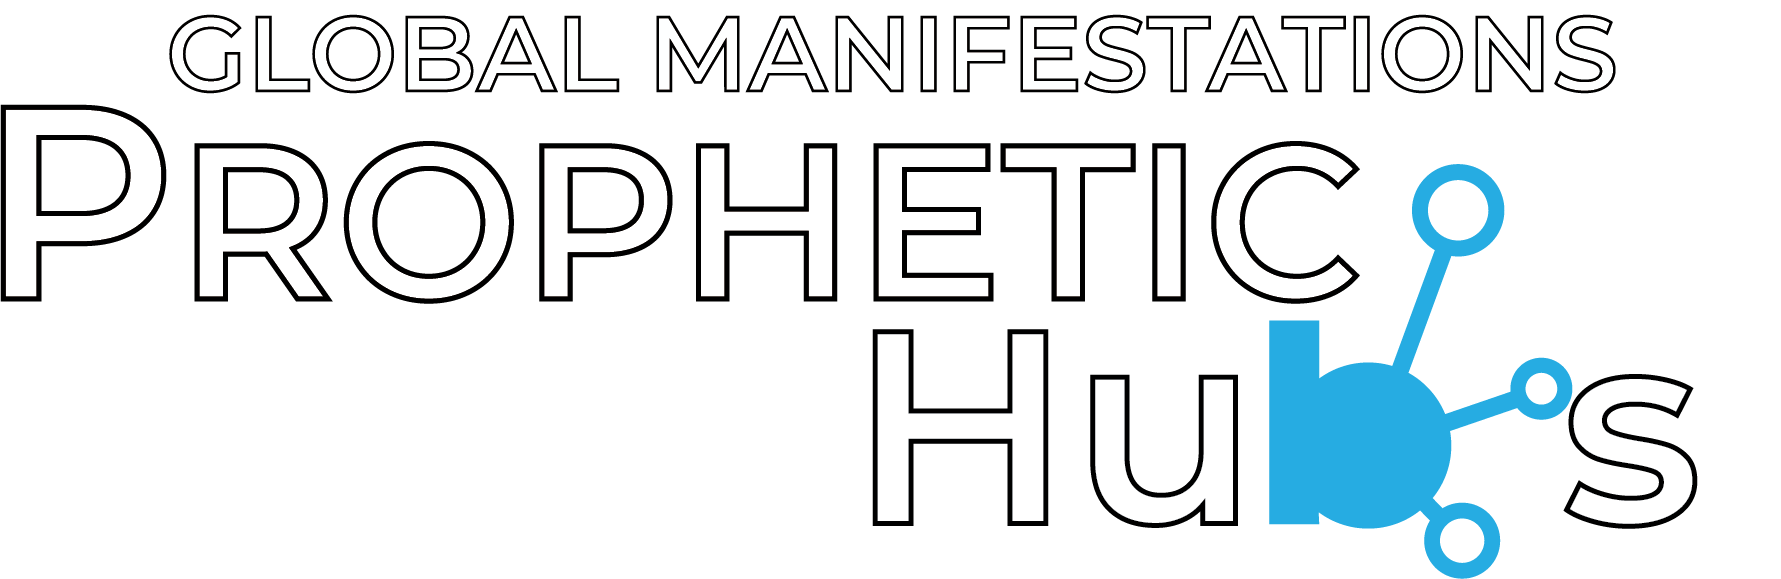 Prophetic Hubs Logo